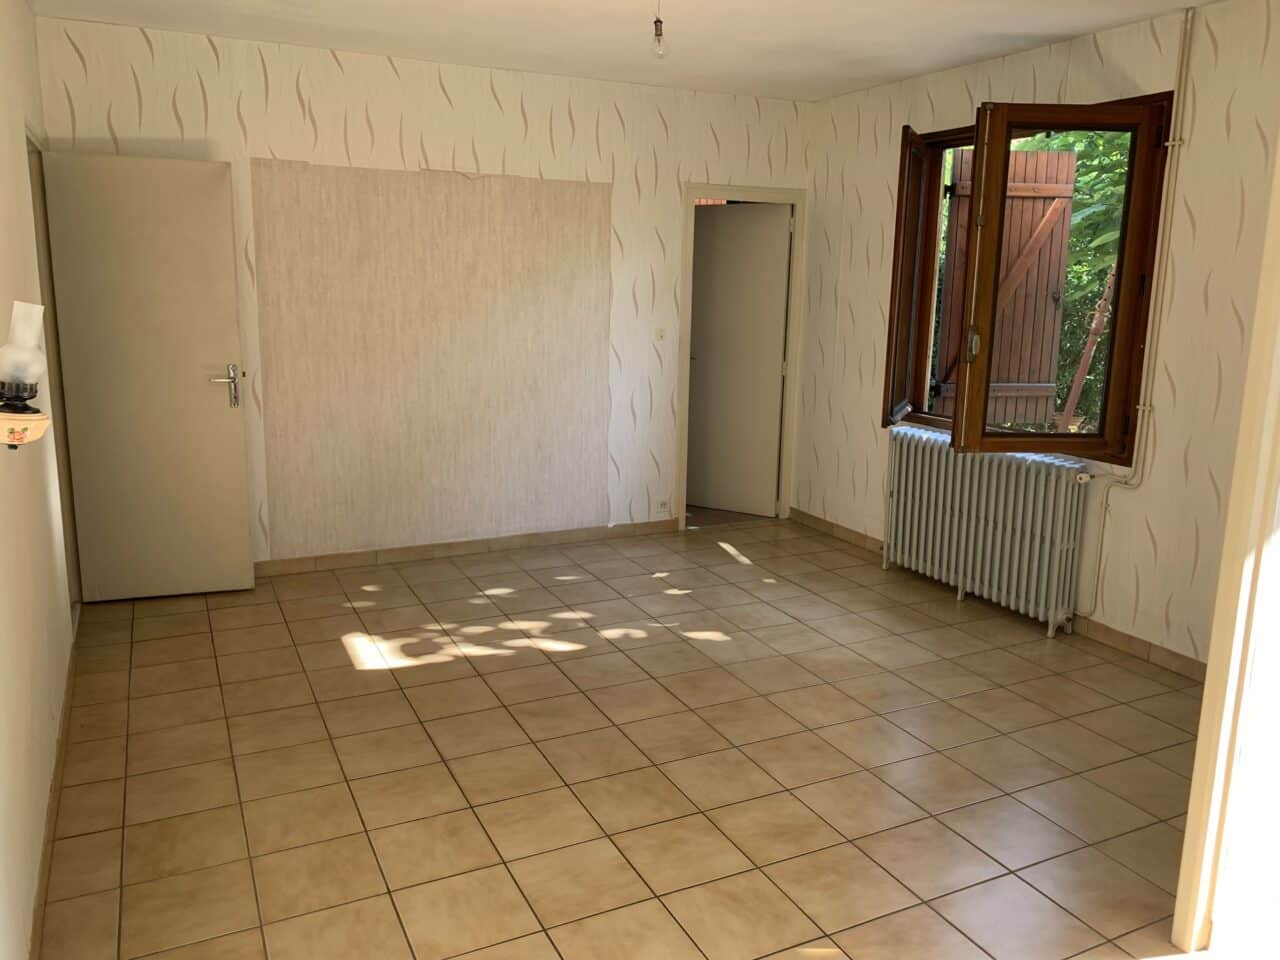 Rénovation complète d’une maison pour du locatif à Villenave-d’Ornon (33)